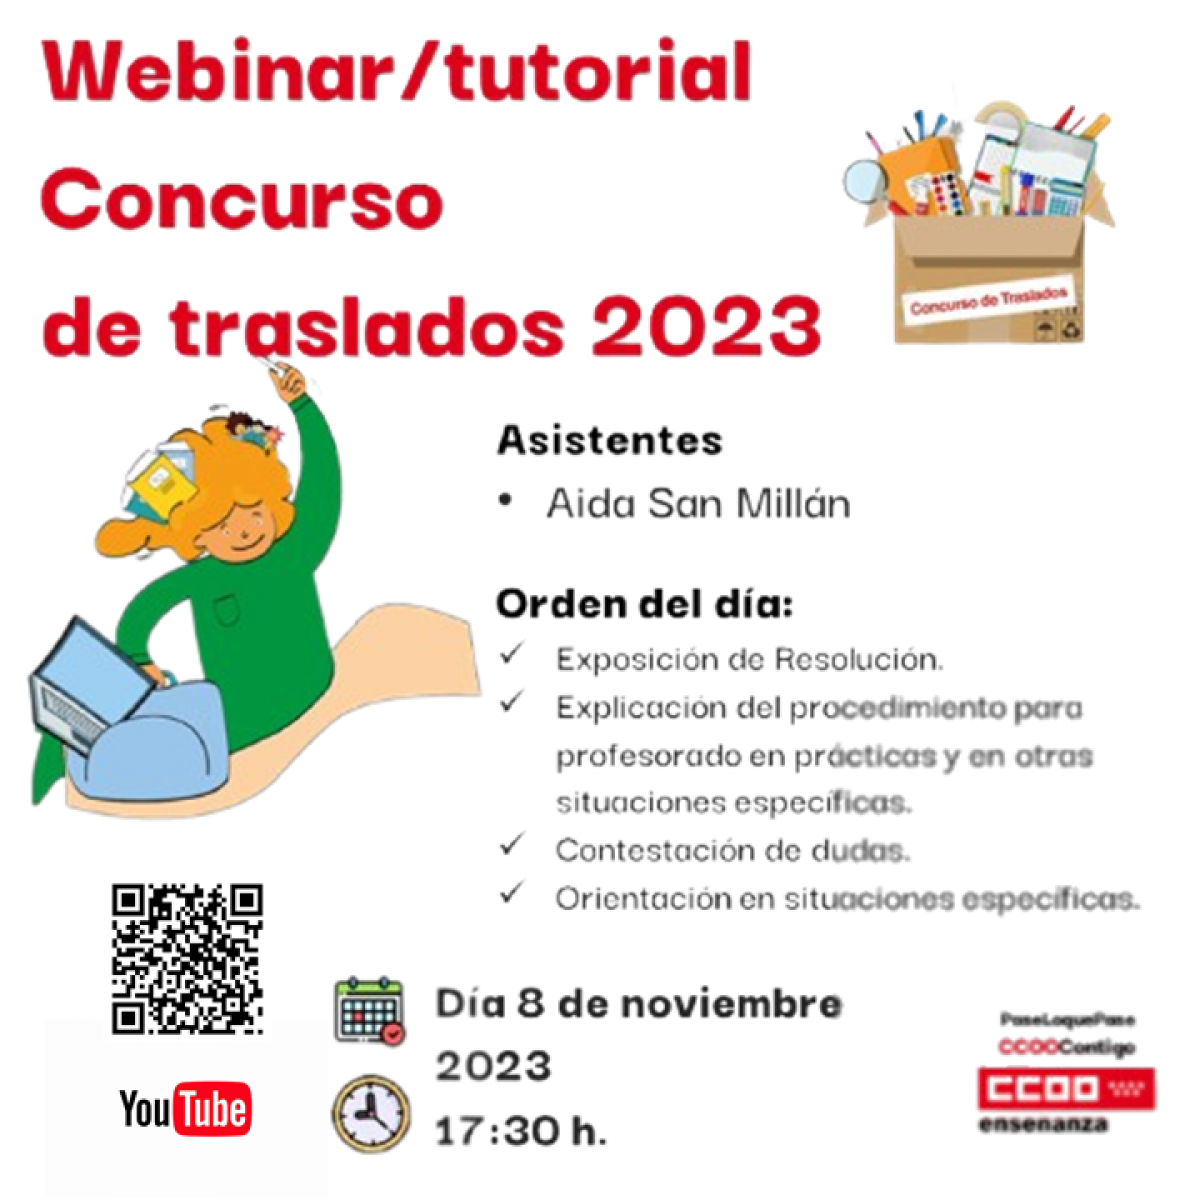 Webinar/tutorial Concurso de Traslados 2023